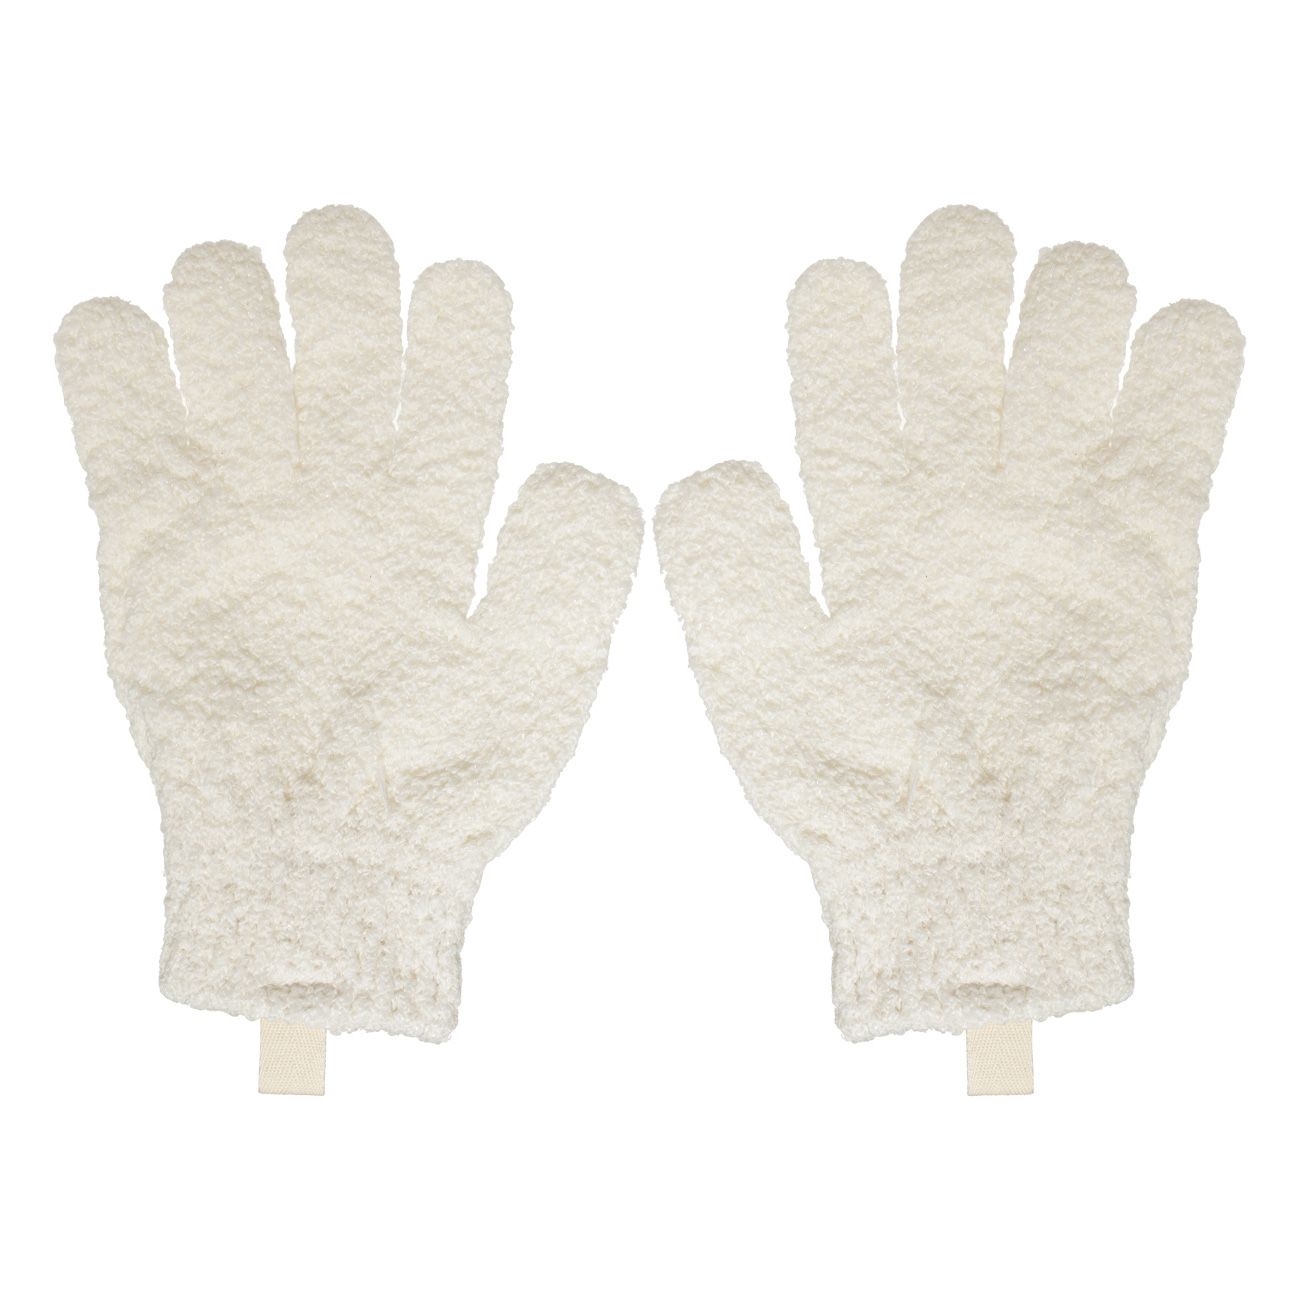 Перчатка для мытья тела Kuchenland отшелушивающая, полиэстер, молочная, 21 см, 2 шт мочалка для мытья тела 14х9 см с держателем полиэстер нейлон серая unique spa